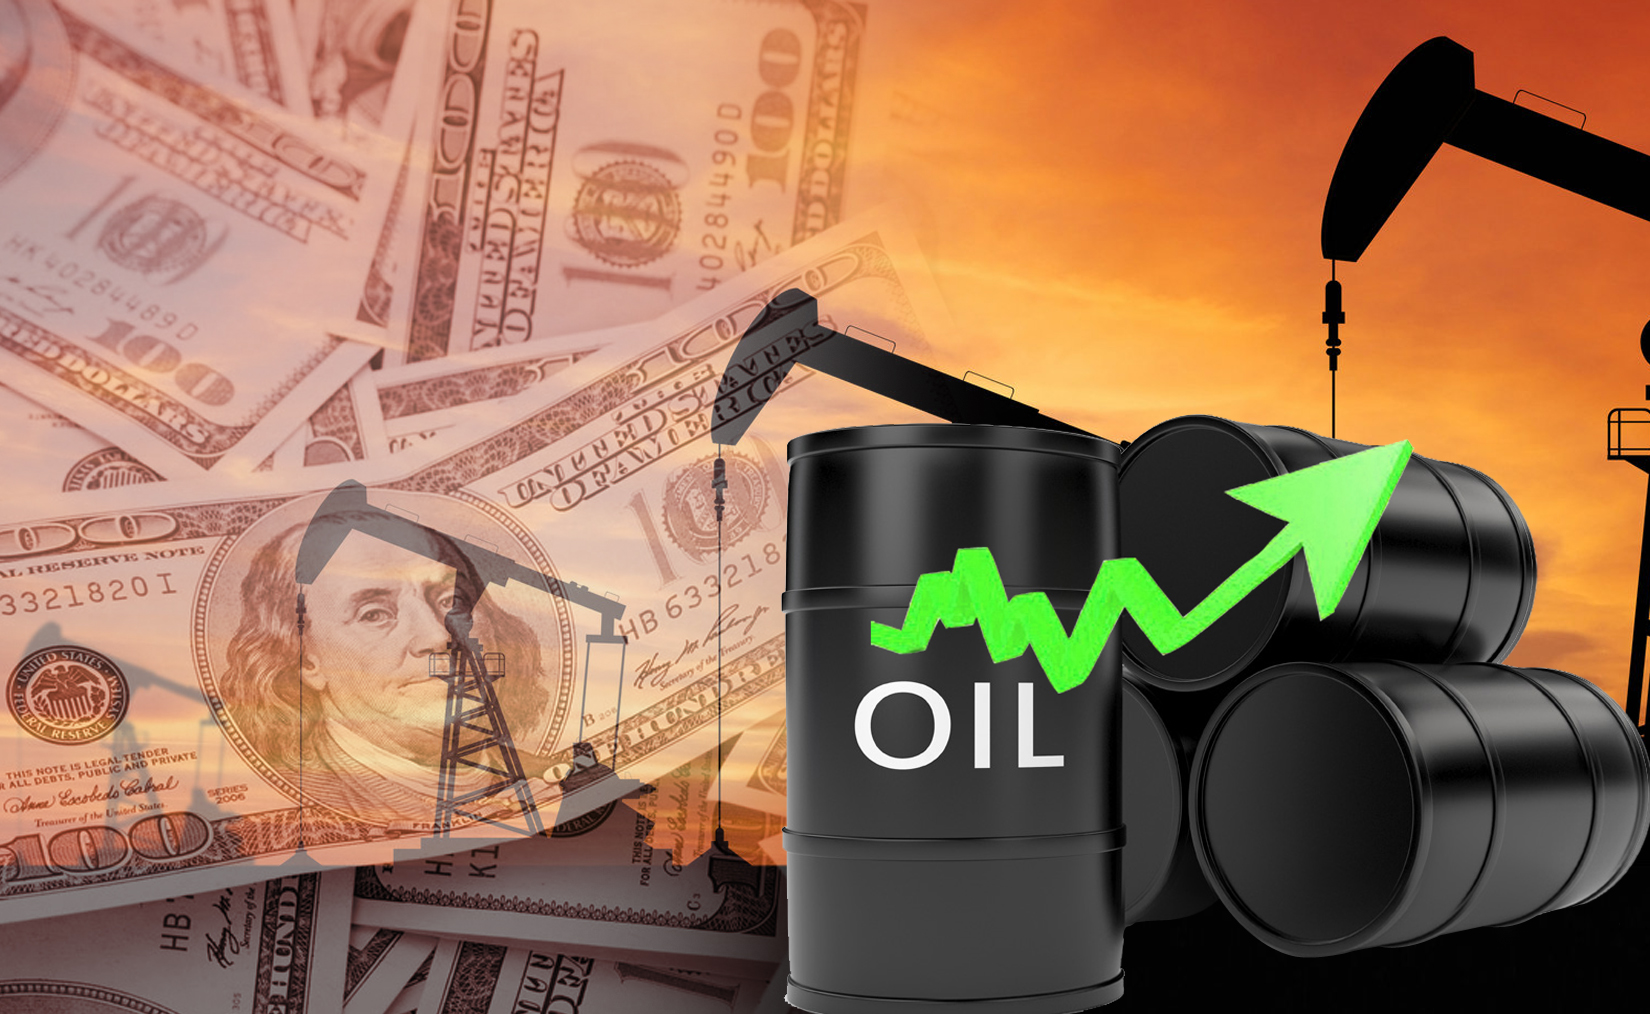 Kuwait oil price went up